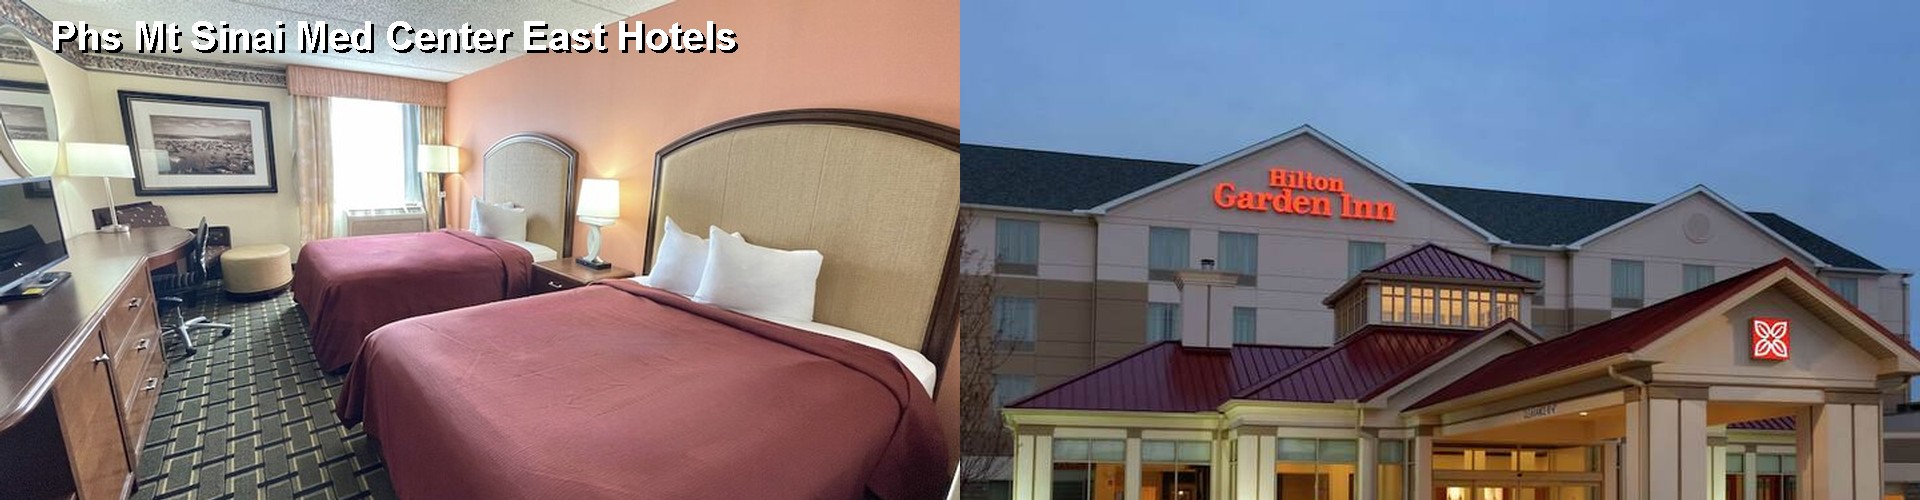 4 Best Hotels near Phs Mt Sinai Med Center East